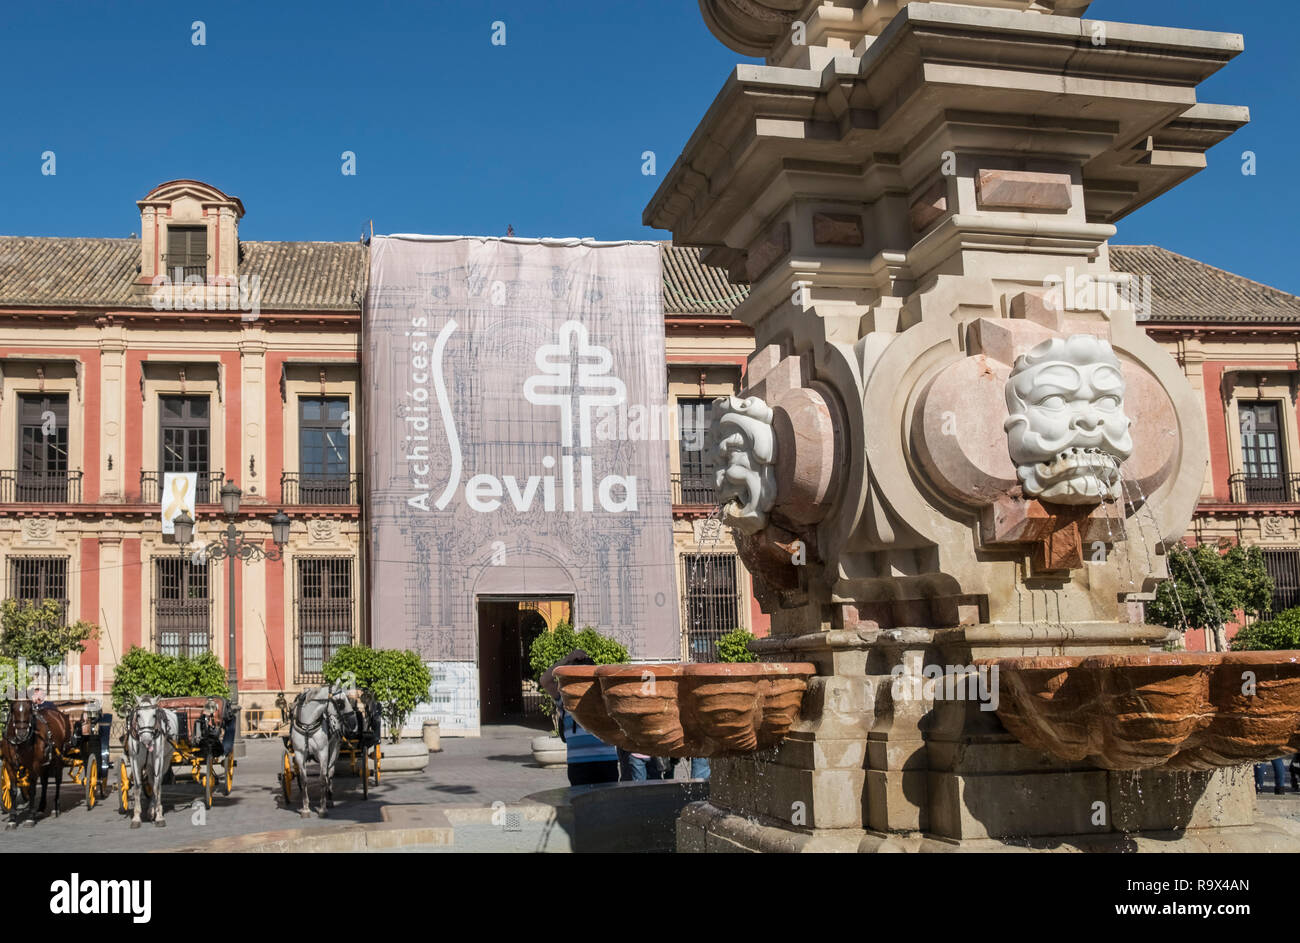 Beliebte touristische Ort mit Pferdewagen in Plaza Virgen de los Reyes, Sevilla, Spanien Stockfoto